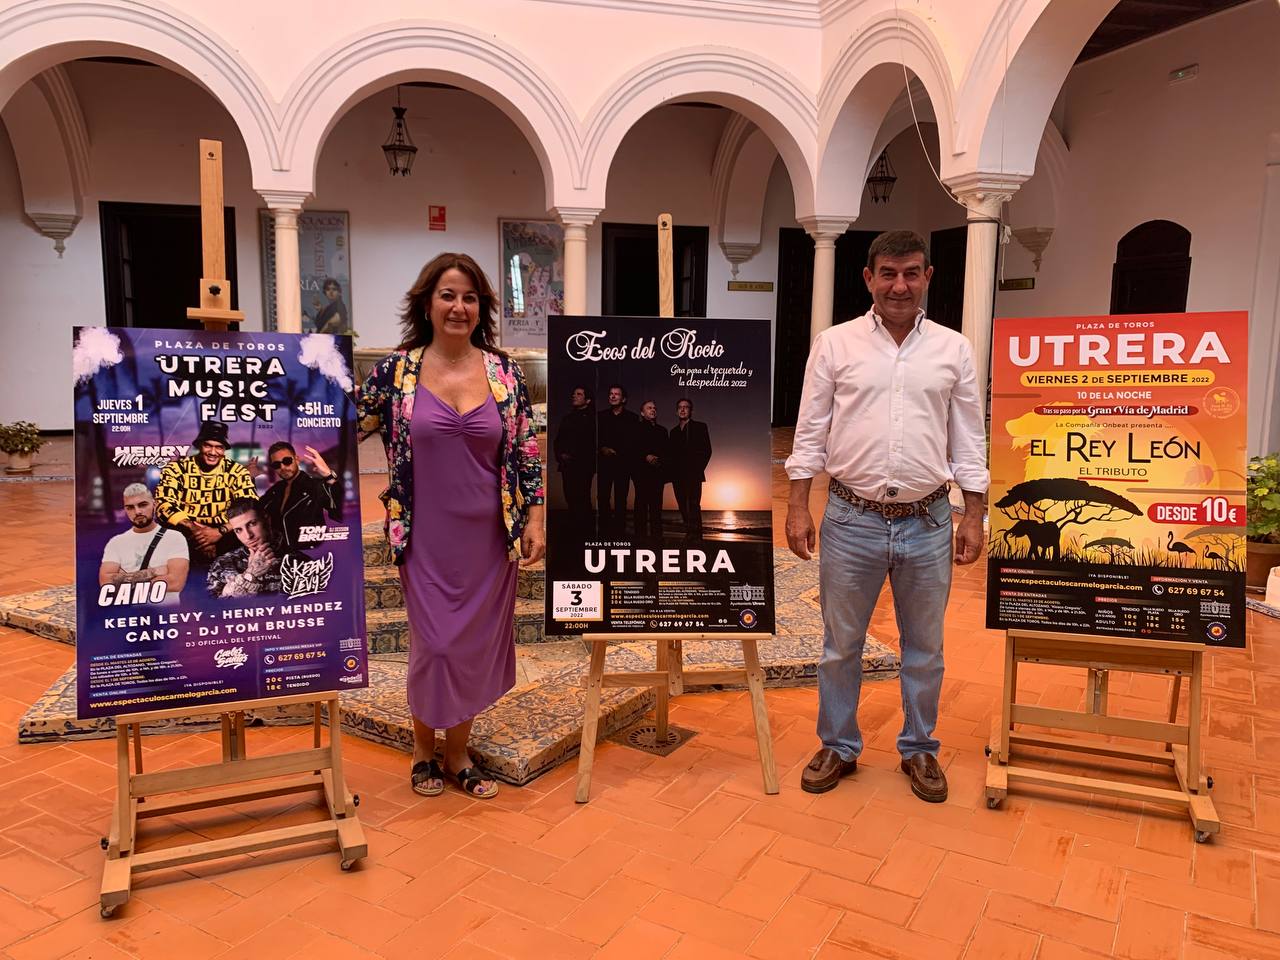 Carmen Cabra y Carmelo García presentan las actividades de la Plaza de Toros en septiembre